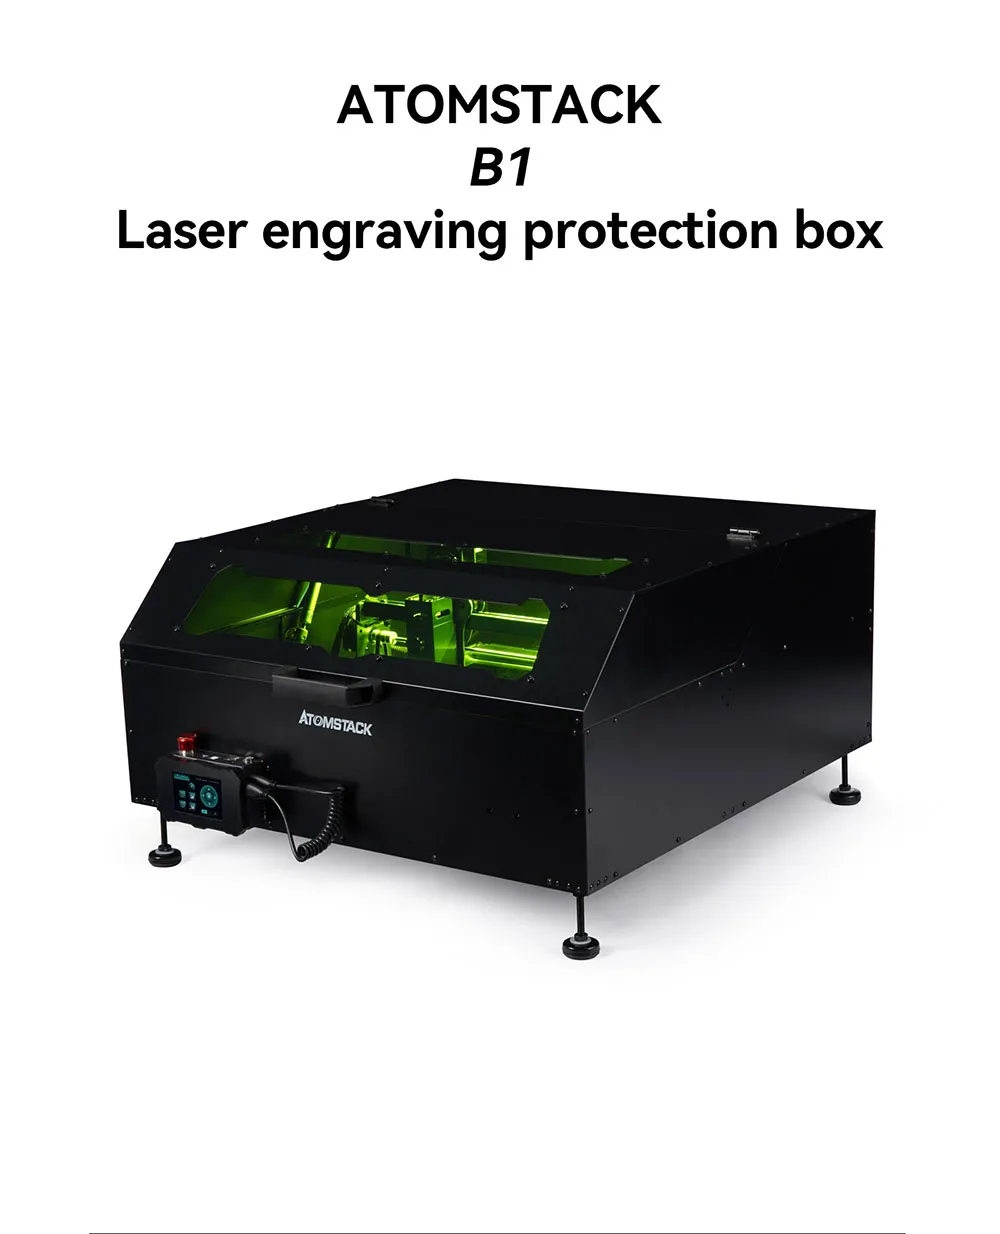 atomstack laser engraving enclosure